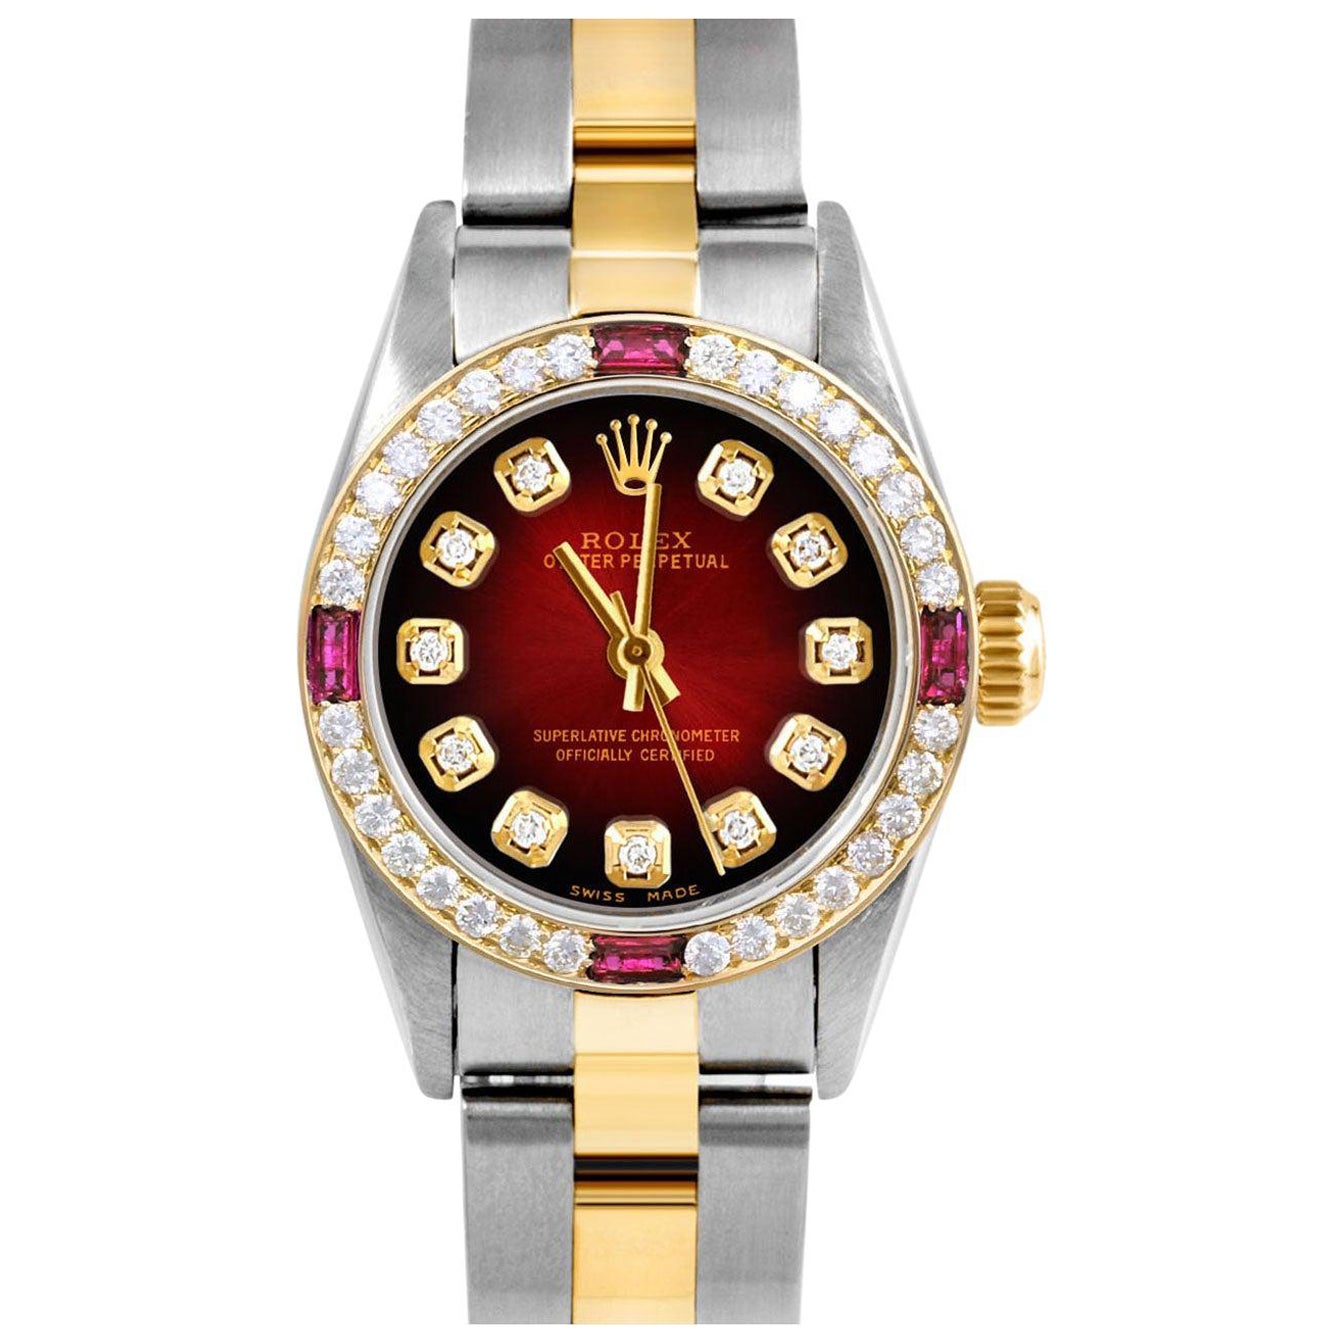 Reloj Rolex Oyster Perpetual para señora con bisel de diamantes y viñeta de rubí roja